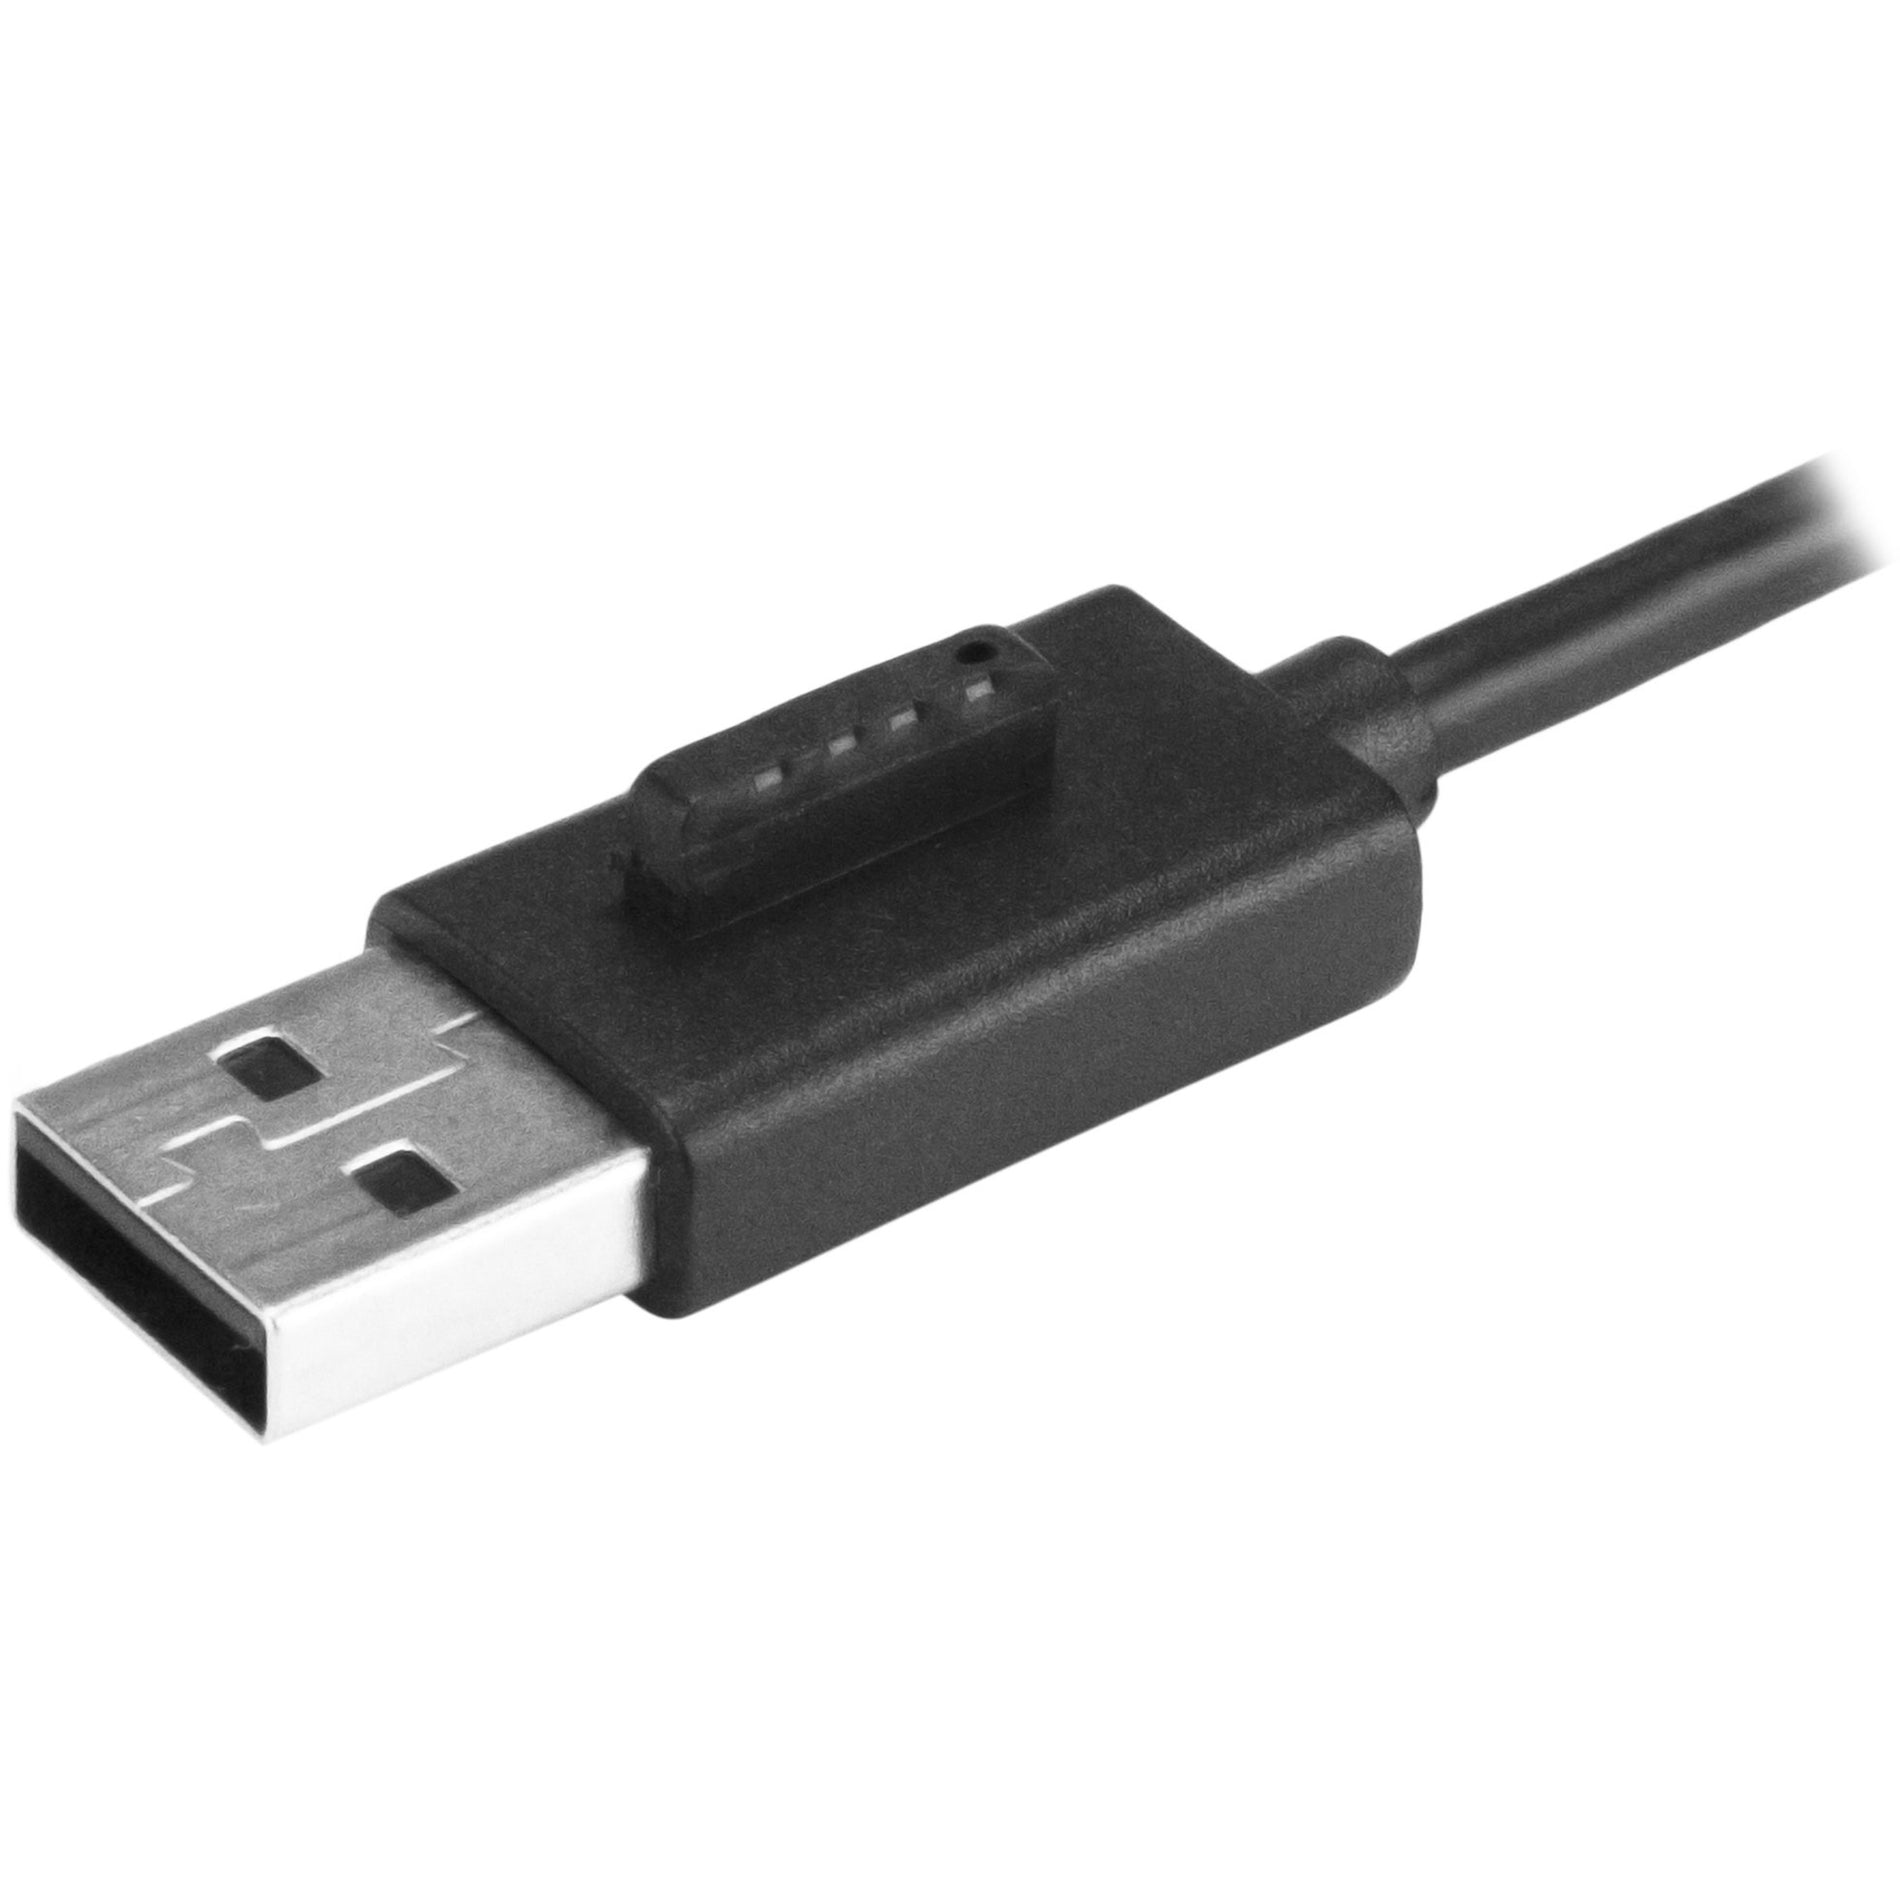 ستارتك.كوم  ST4200MINI2 4 منفذ محمول USB 2.0 محور مع كابل مدمج، محور USB مصغر مدمج